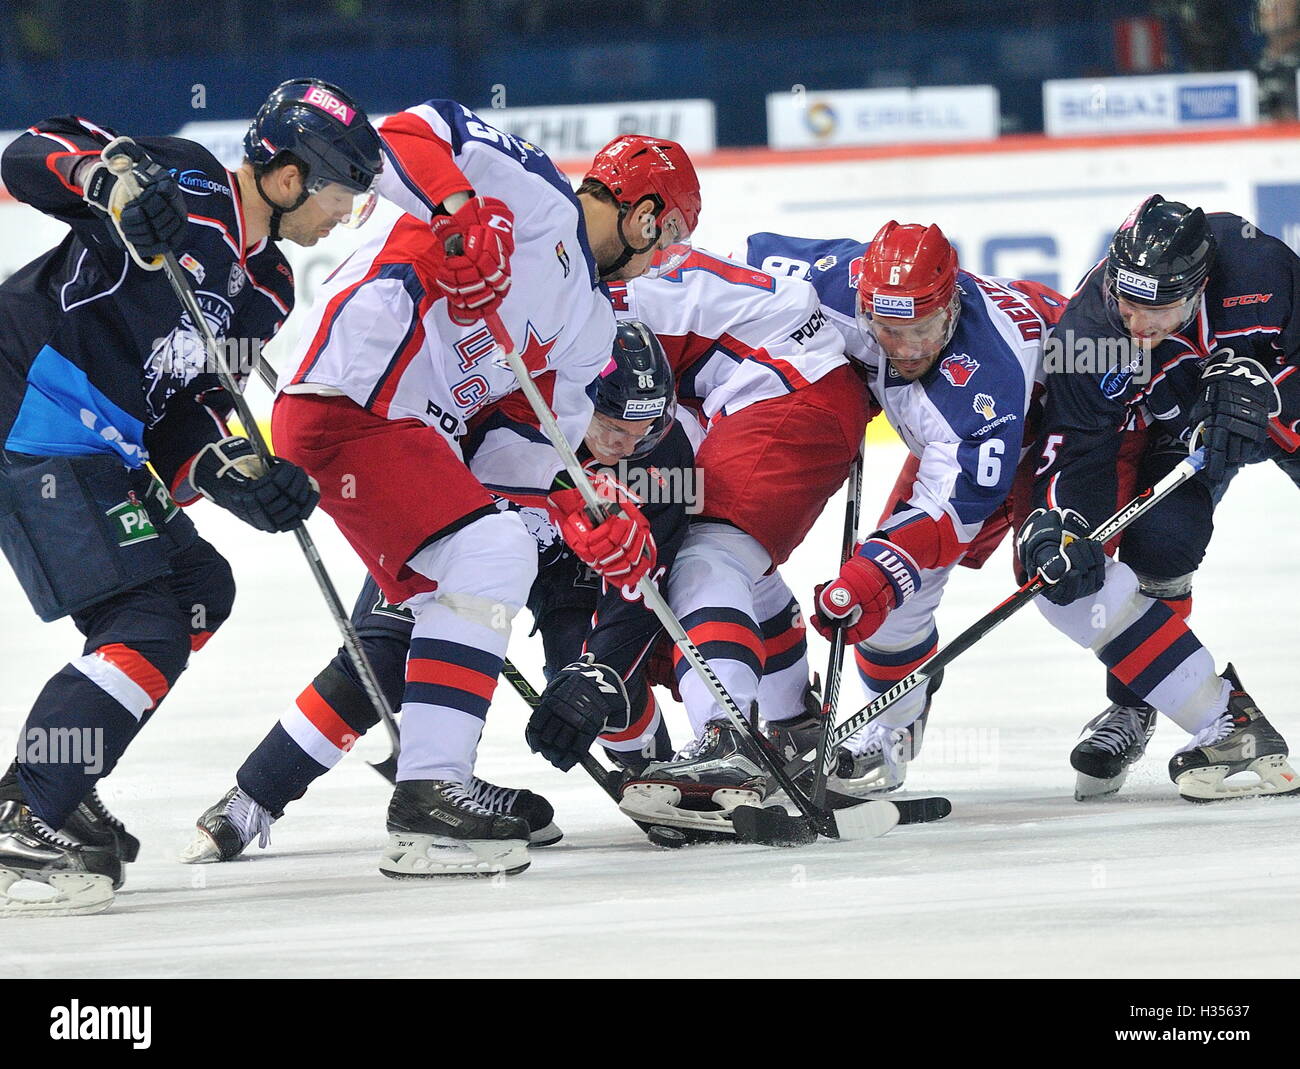 (161005)--ZAGREB, 5. Oktober 2016 (Xinhua) - Spieler konkurrieren in der Kontinental Hockey League (KHL) Übereinstimmung zwischen ZSKA Moskau und Medvescak Zagreb in Zagreb, Hauptstadt Kroatiens, 4. Oktober 2016. ZSKA Moskau gewann 5: 2. (Xinhua/Miso-Lisanin) Stockfoto